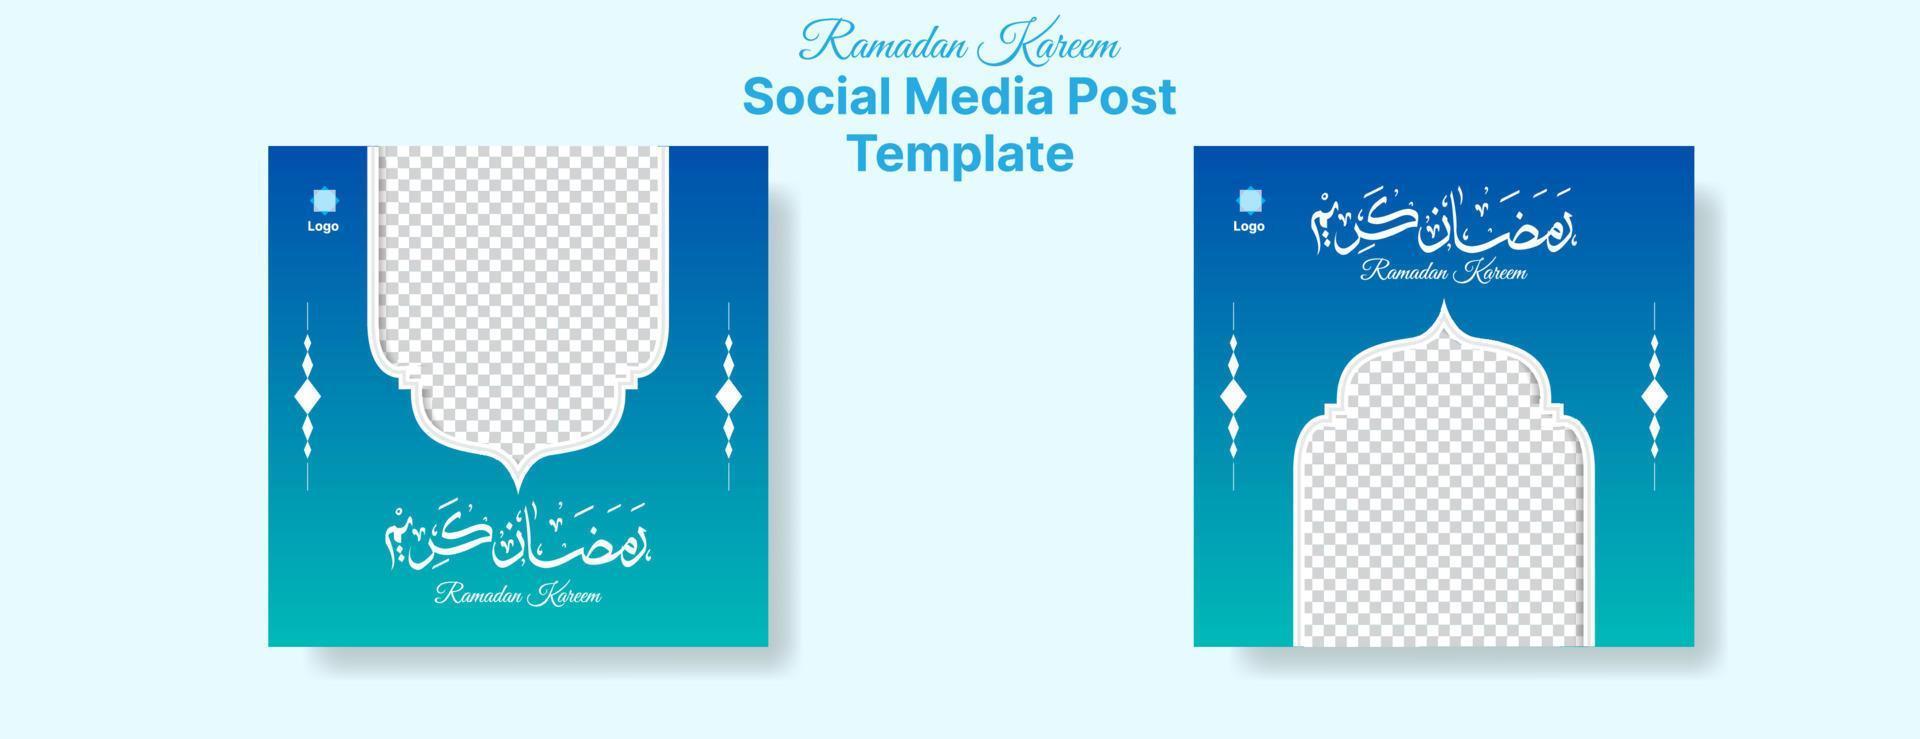 ramadan kareem social media post design mit arabischer kalligrafie und fotoraum auf blauem hintergrund mit verlauf. ideal auch für grußkarten. Vektor-Illustration vektor